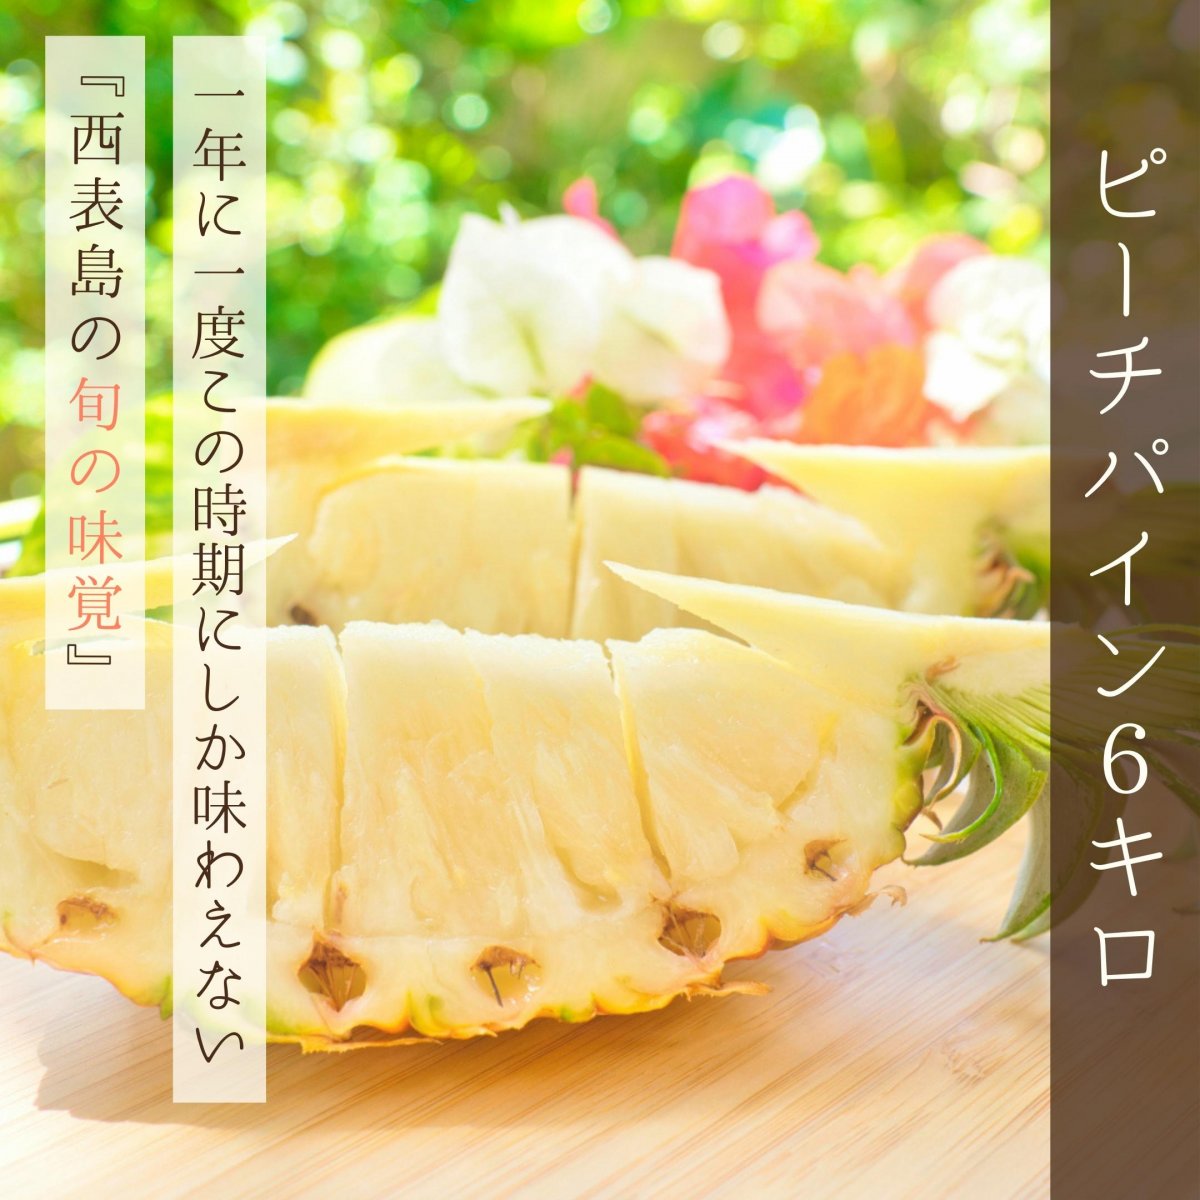 【６Kg】西表島産ピーチパイン 〜パイナップルなのに『ほんの〜り桃の香り』がする不思議なパイナップル〜